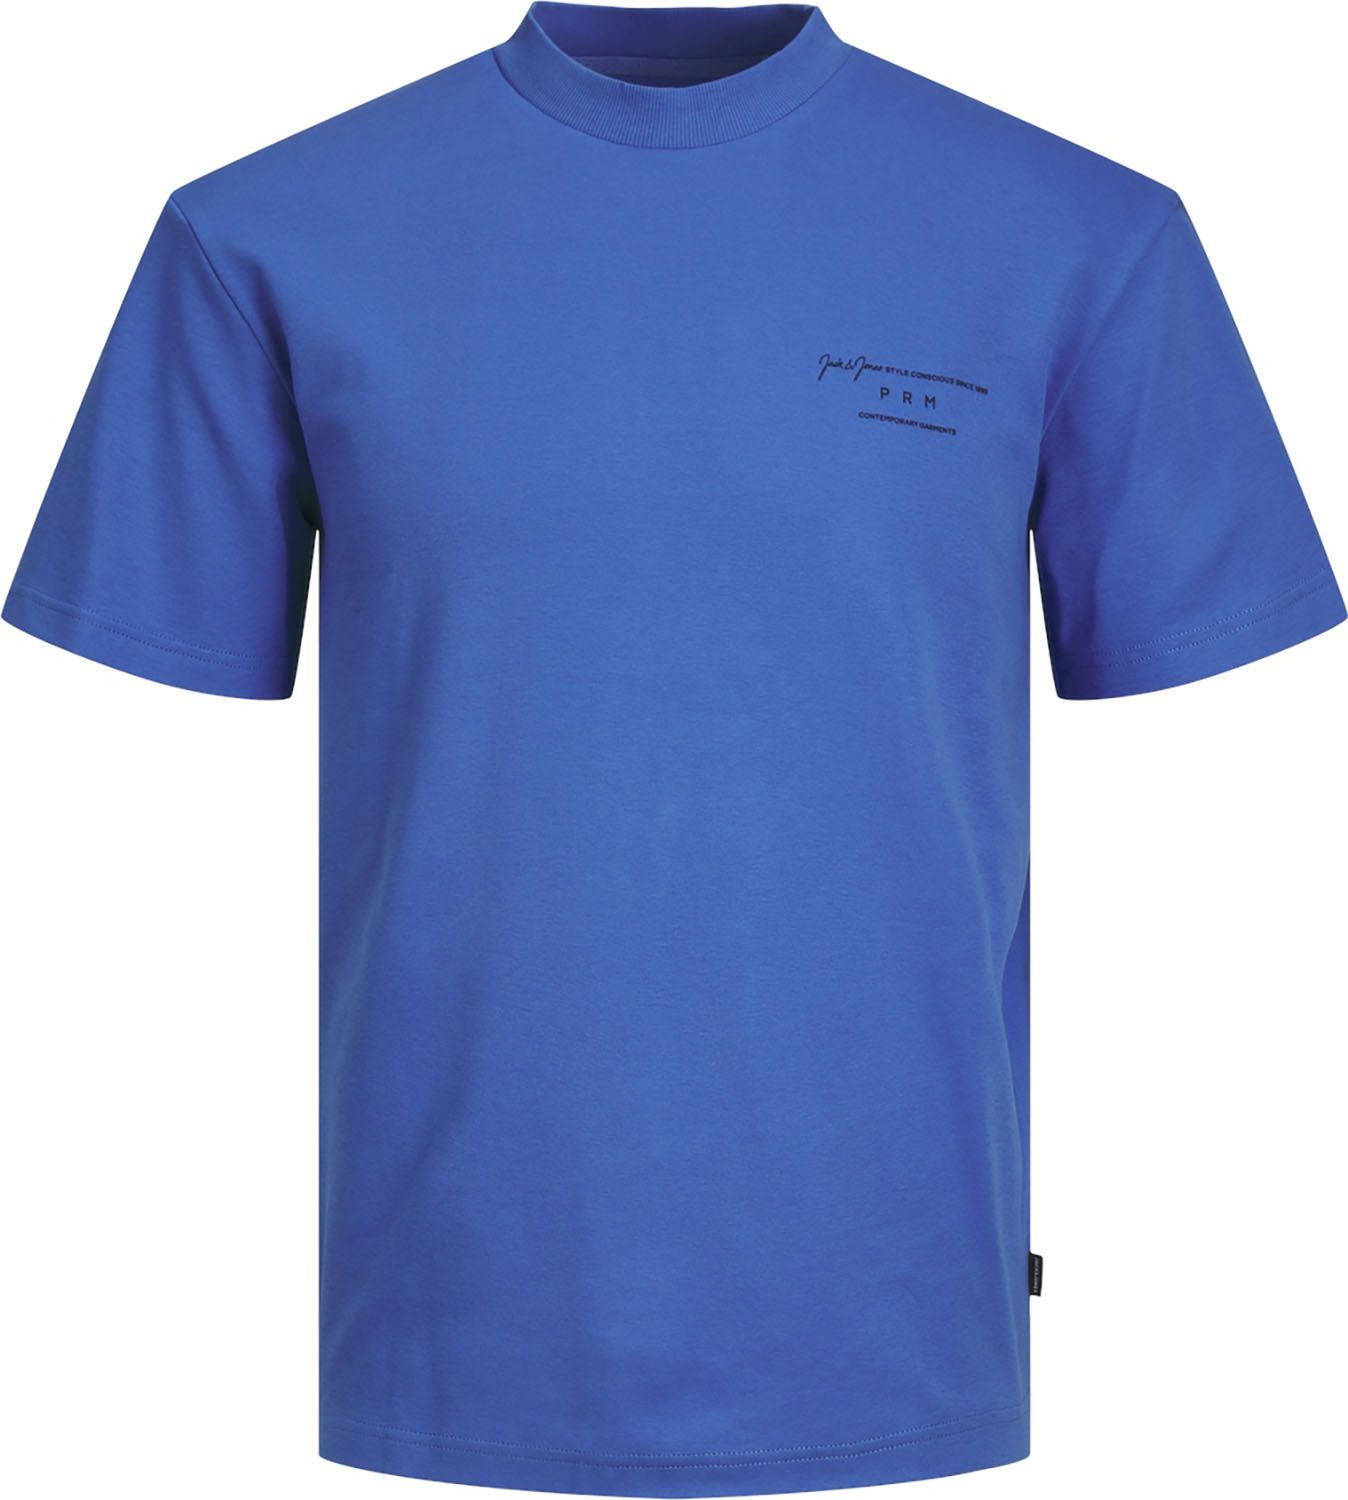 T-shirt La Sanchez Blauw